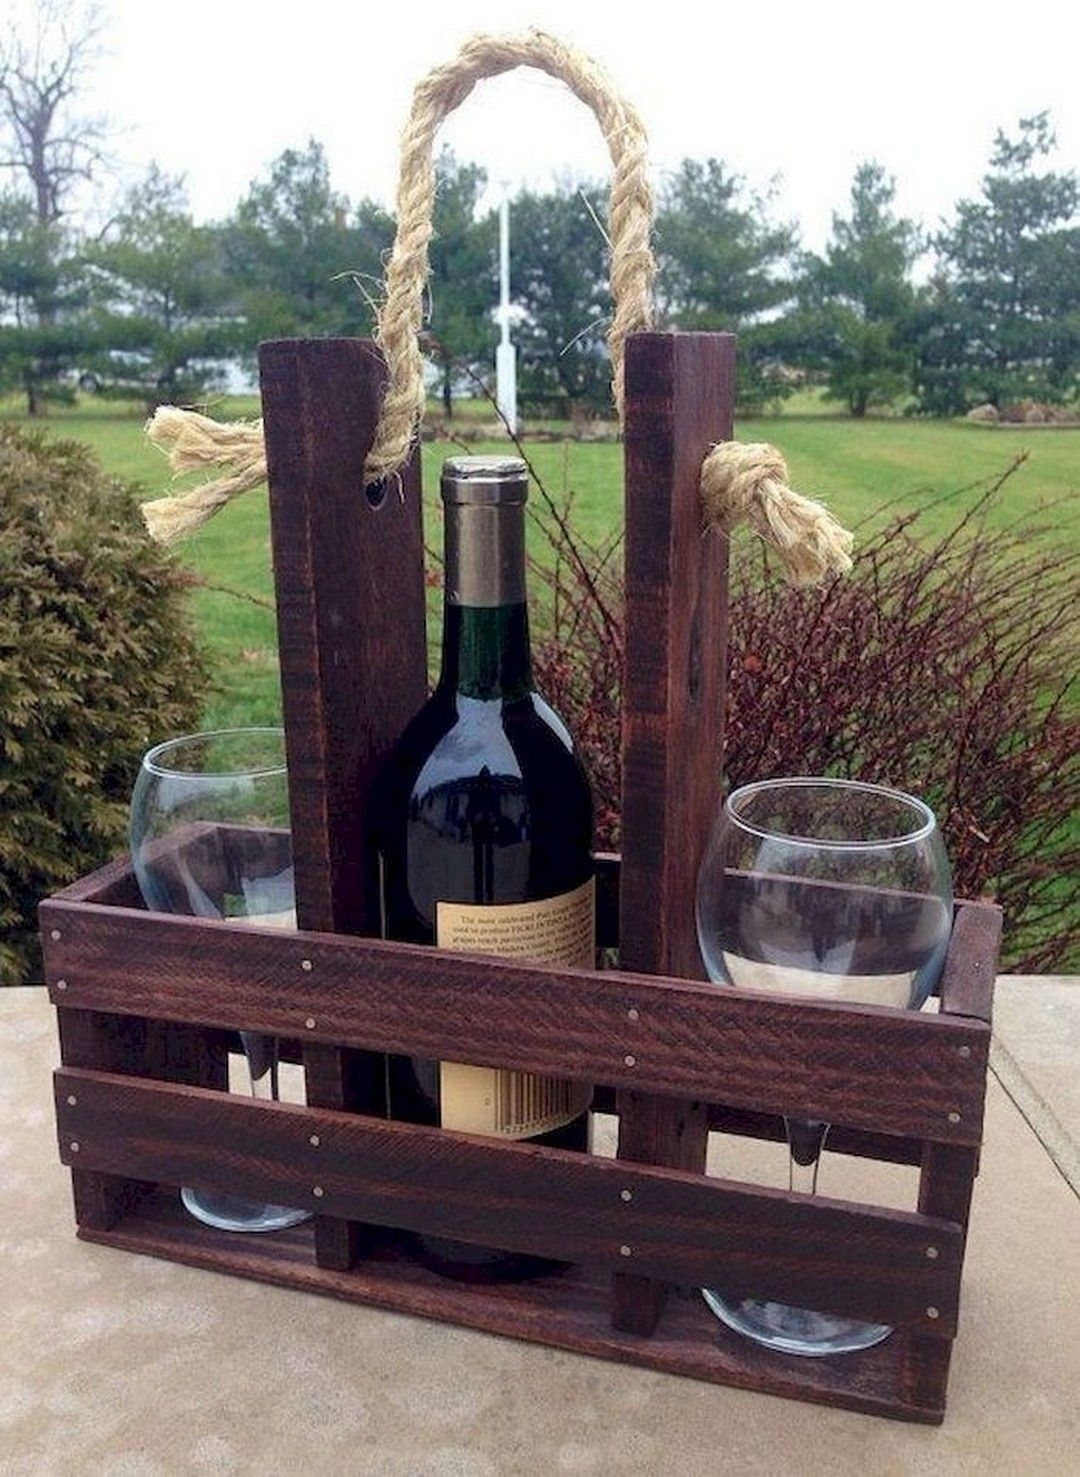 Handmade wood wine bottle glass carrier